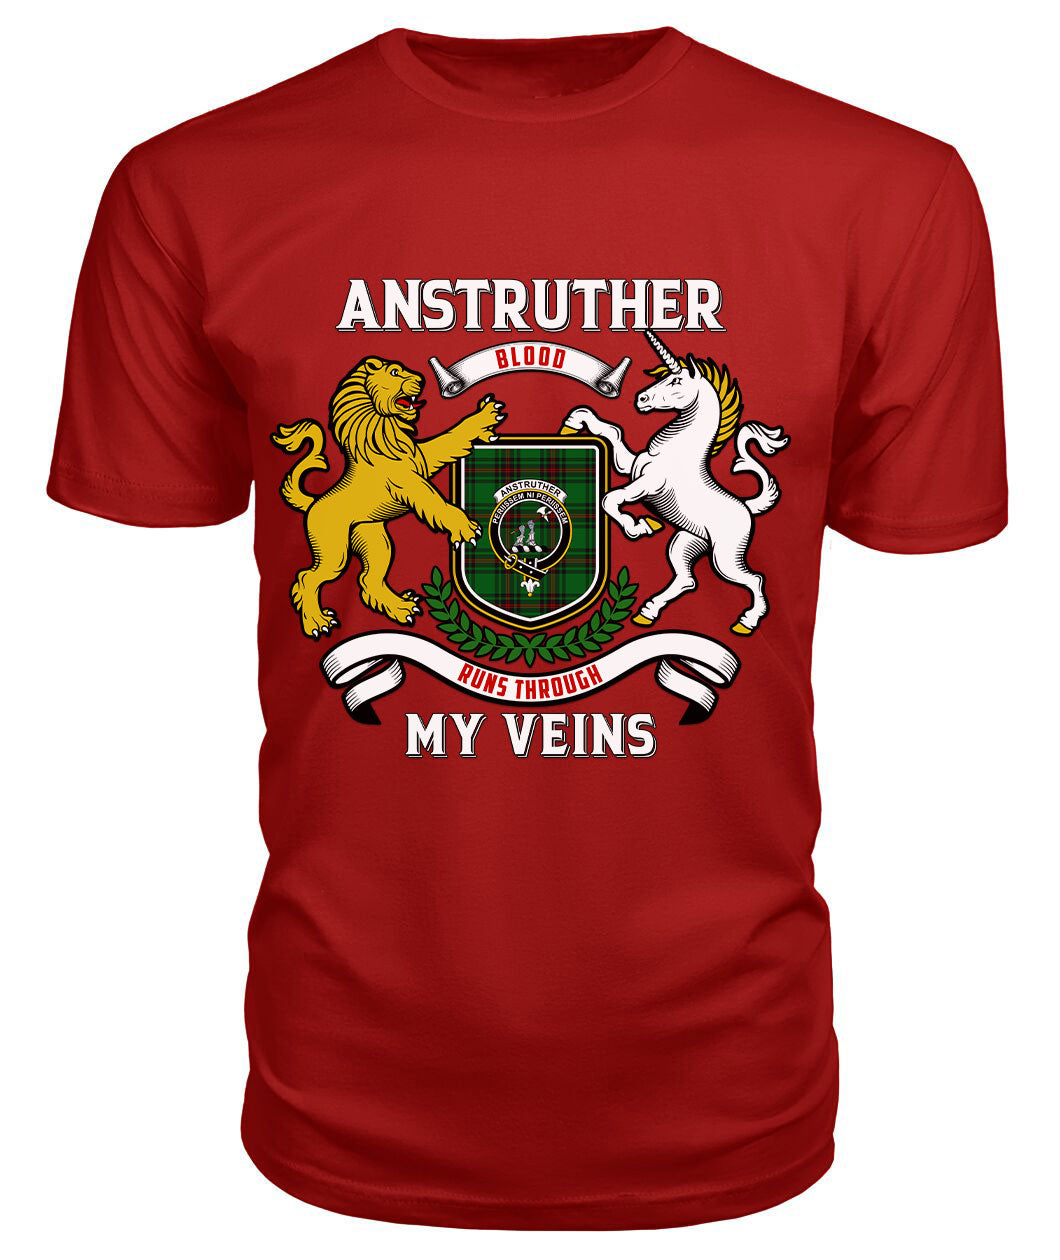 Anstruther Tartan Crest 2D T-shirt - Blood Runs Through My Veins Style